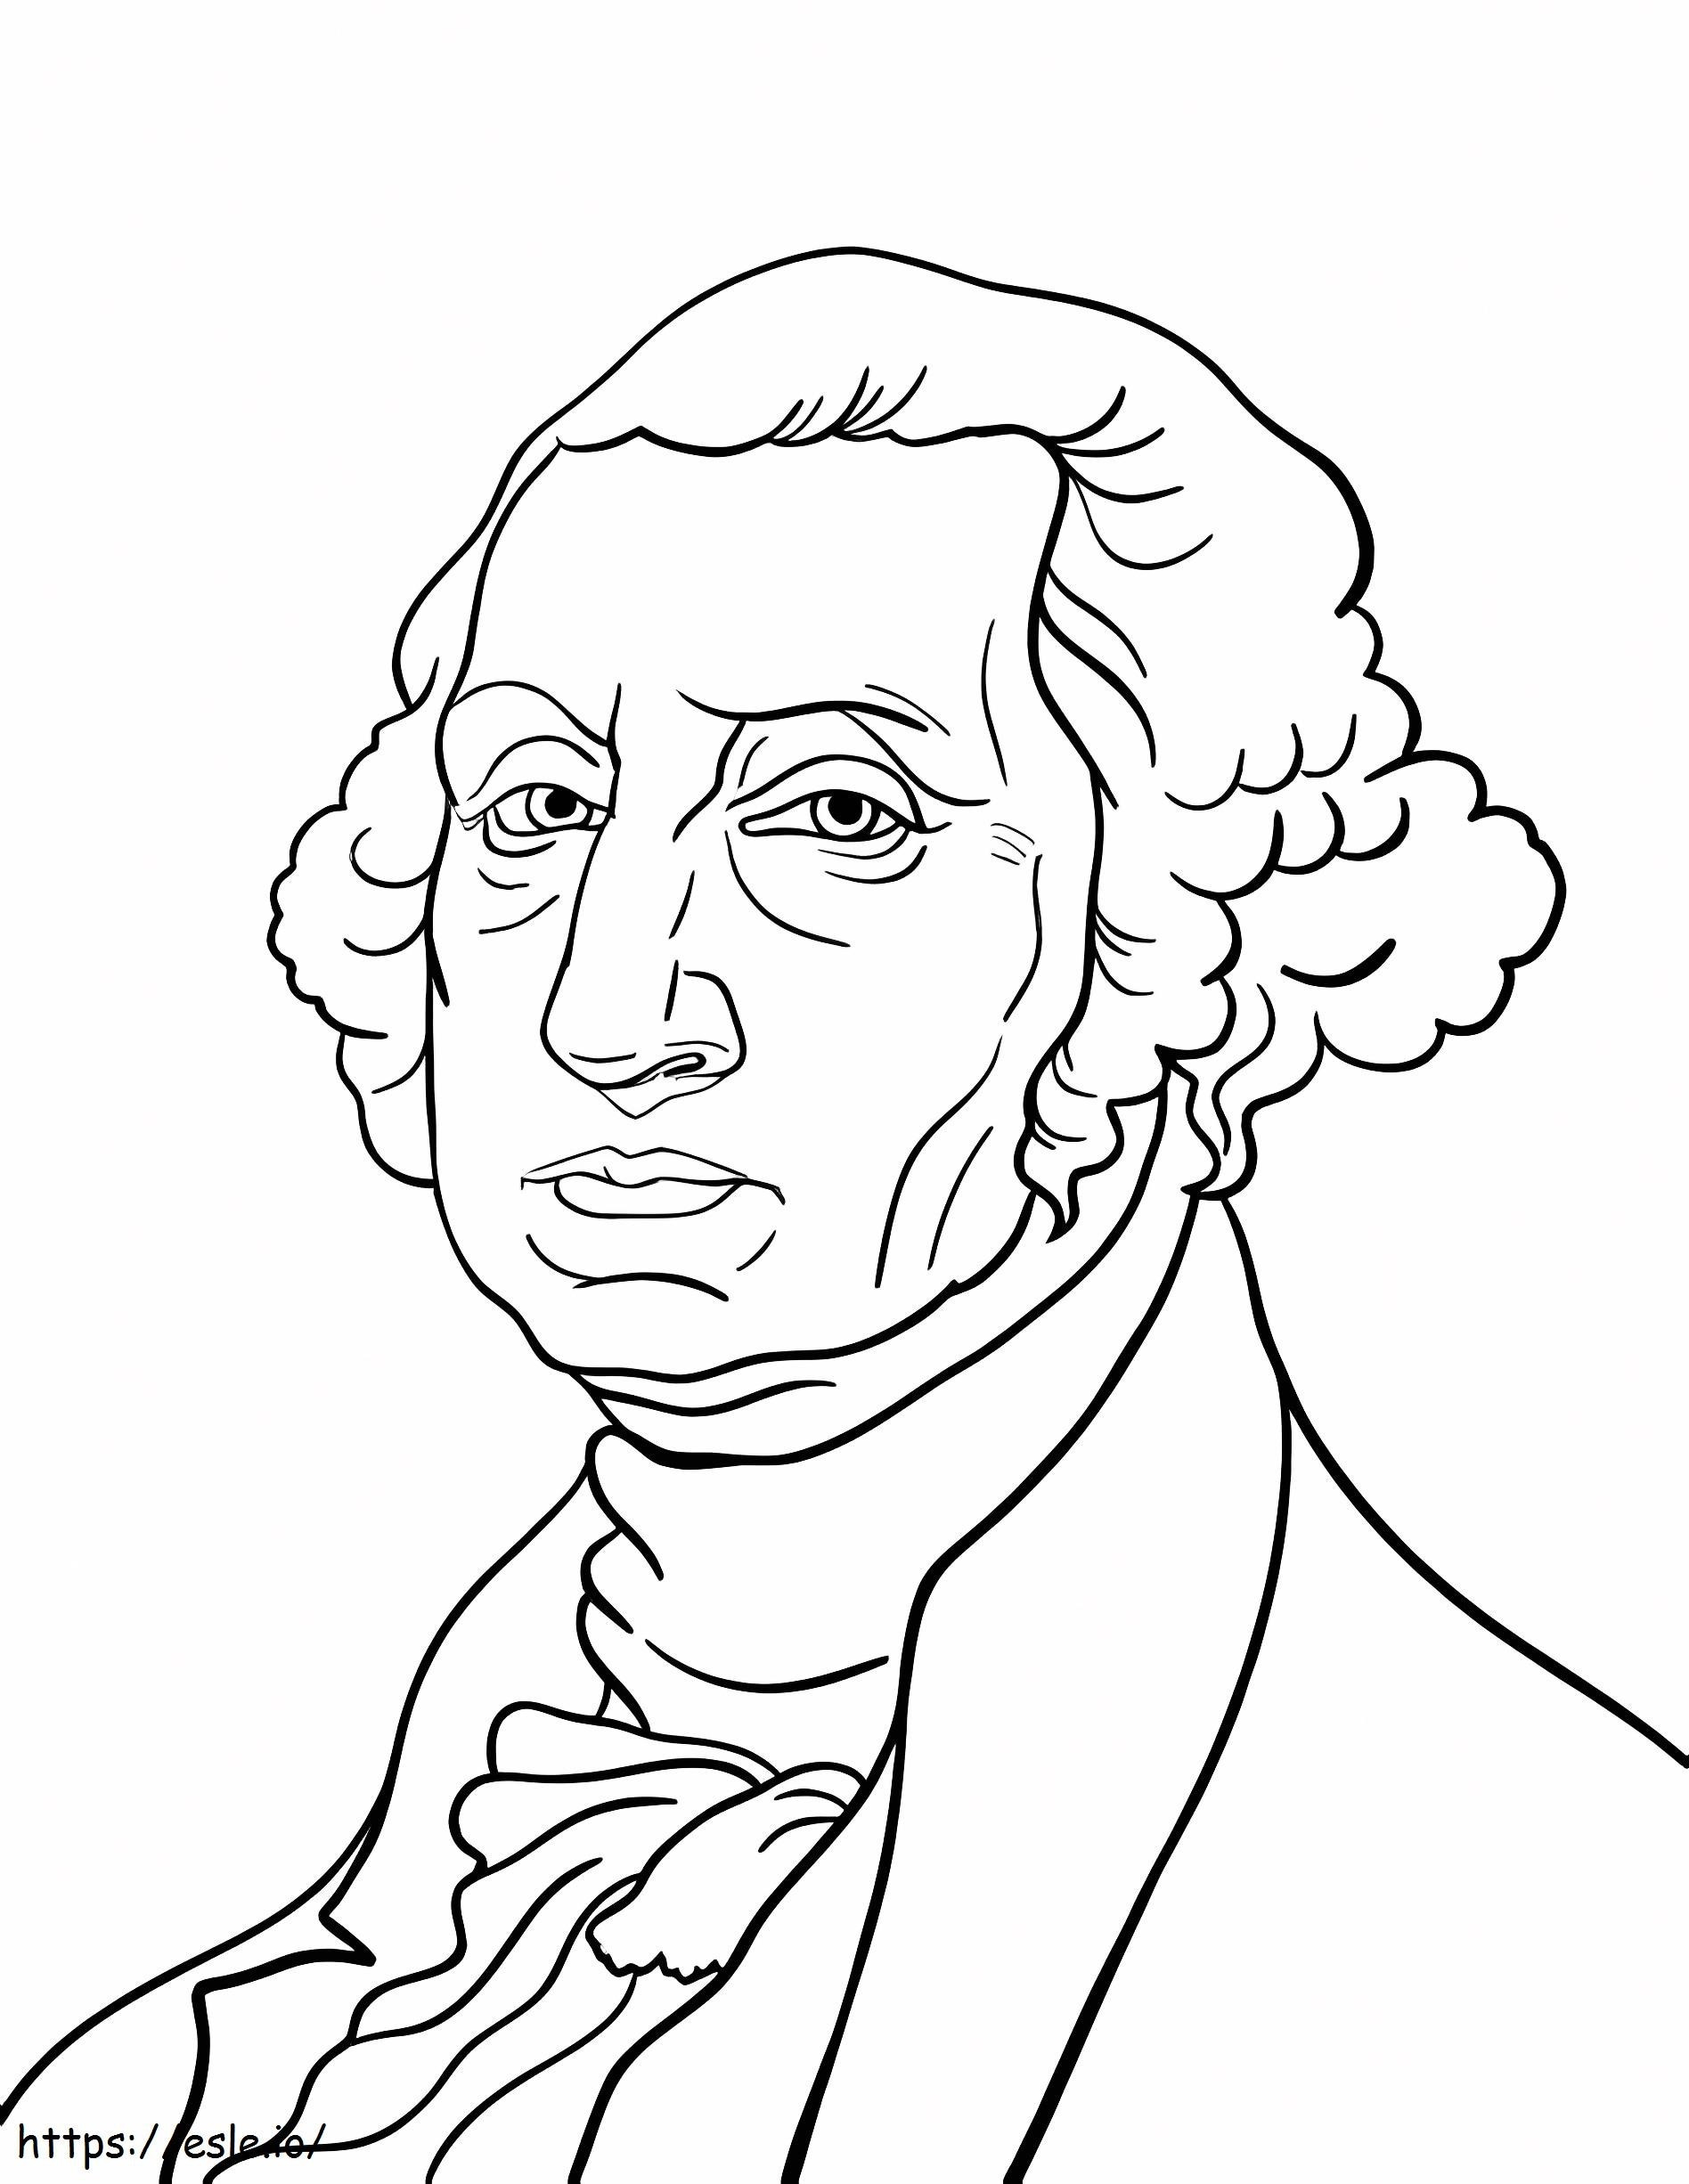 George Washington Portrait coloring page